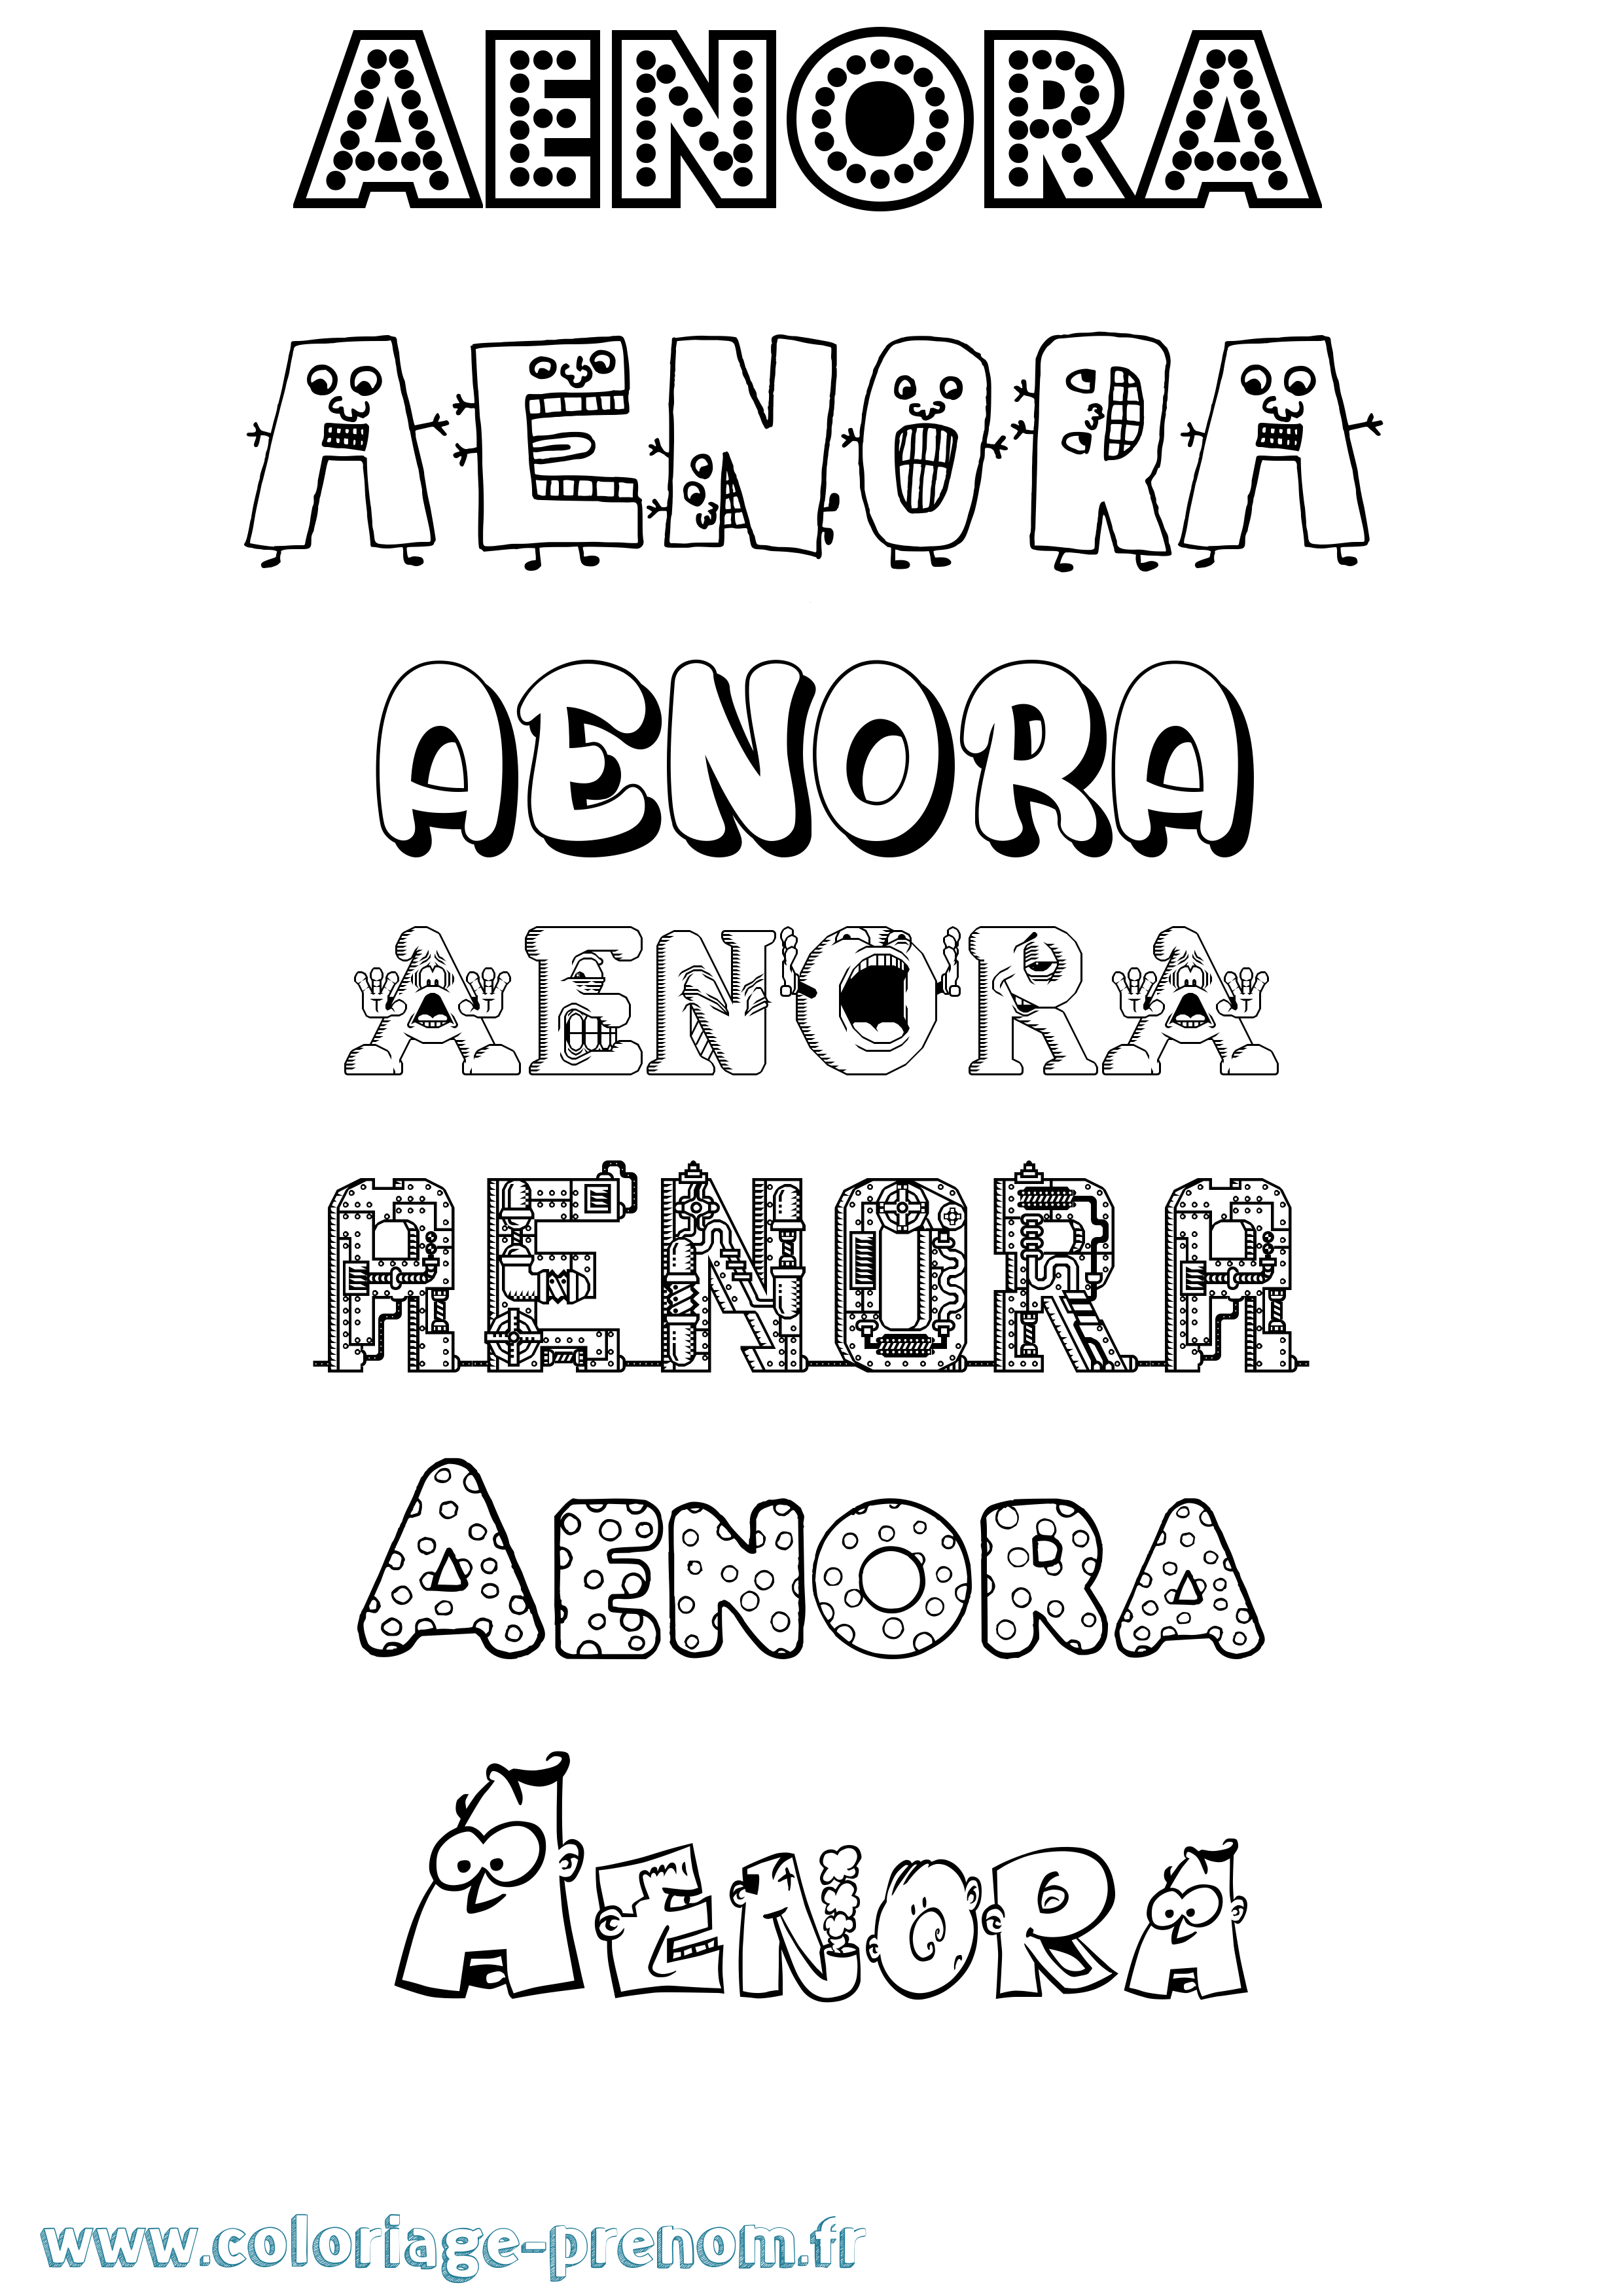 Coloriage prénom Aenora Fun